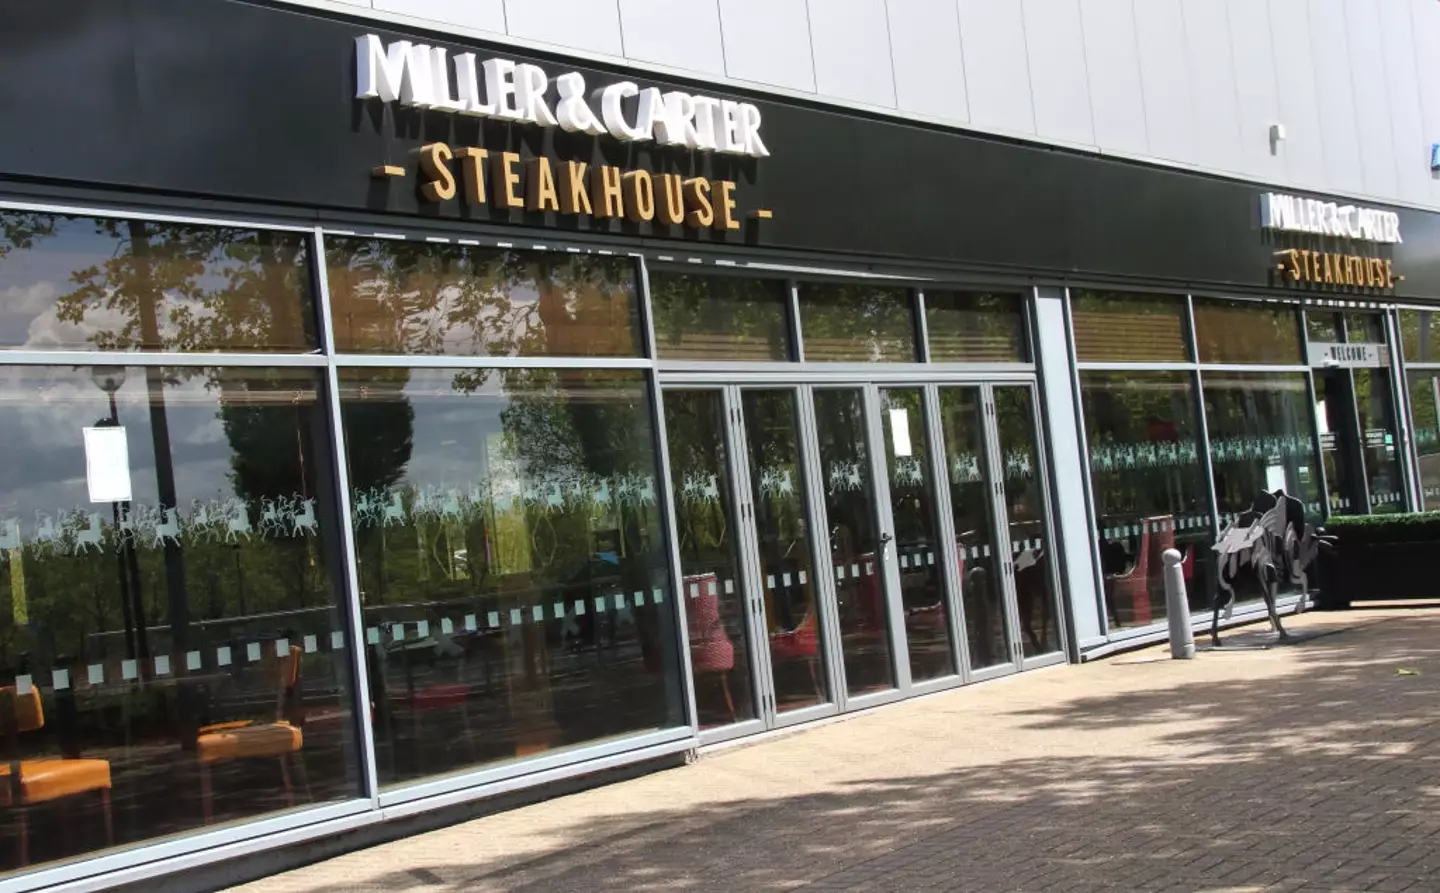 Miller & Carter steakhouse (